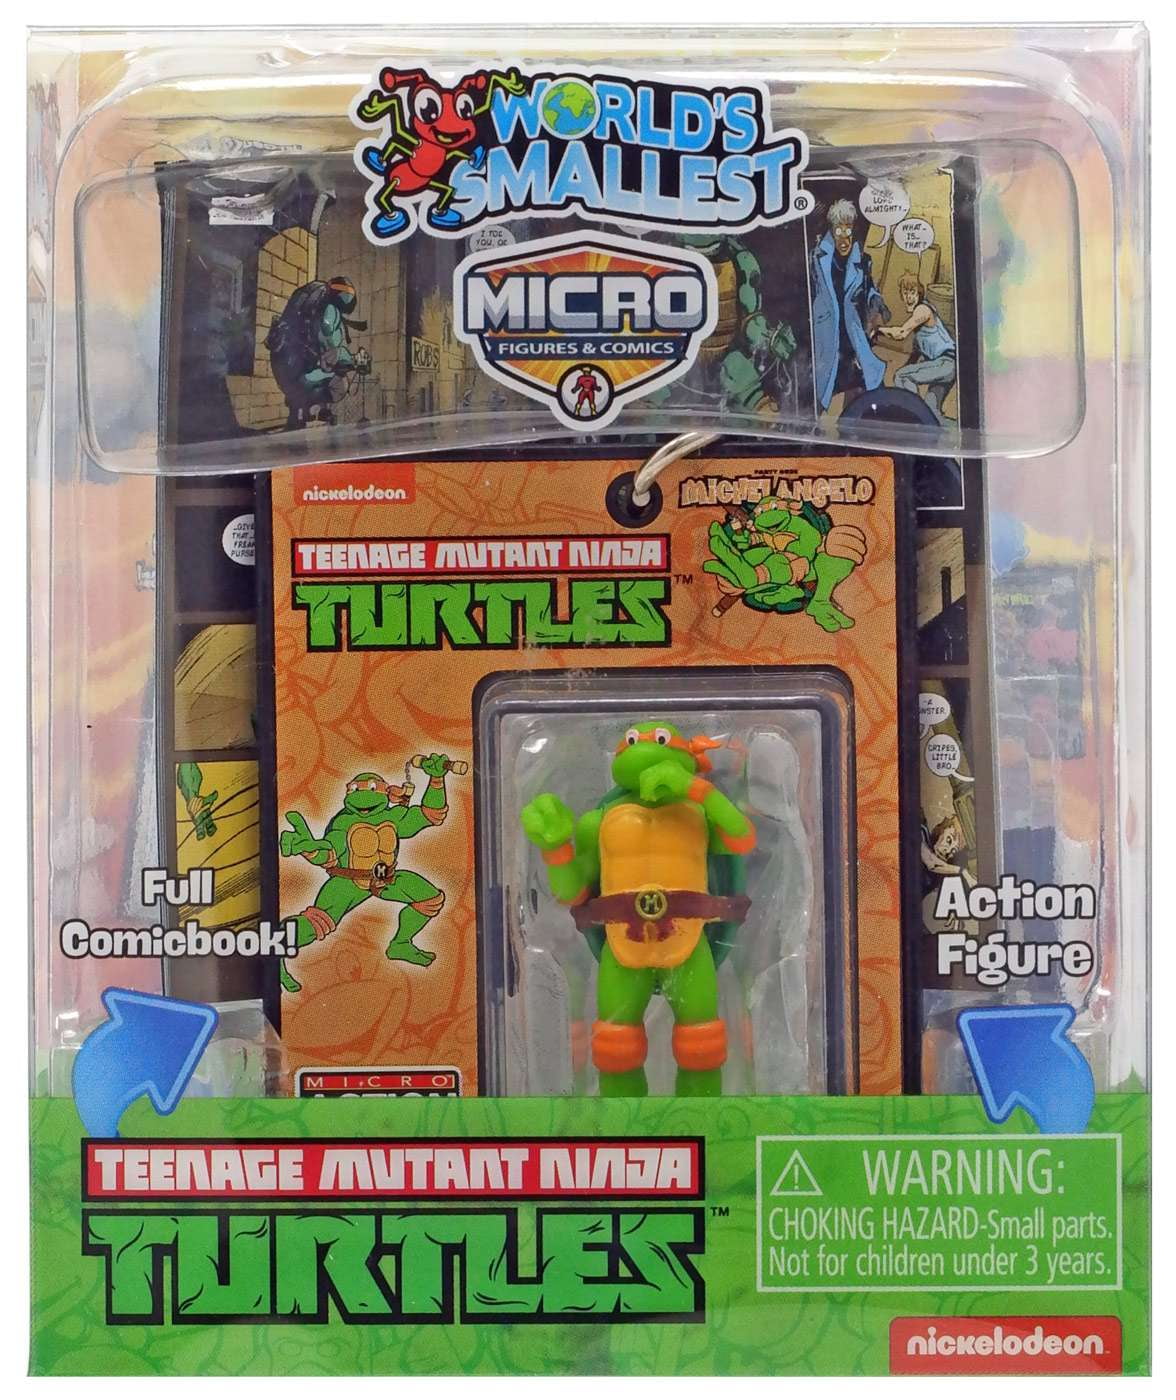 World's Smallest | Teenage Mutant Ninja Turtles Micro Figurines